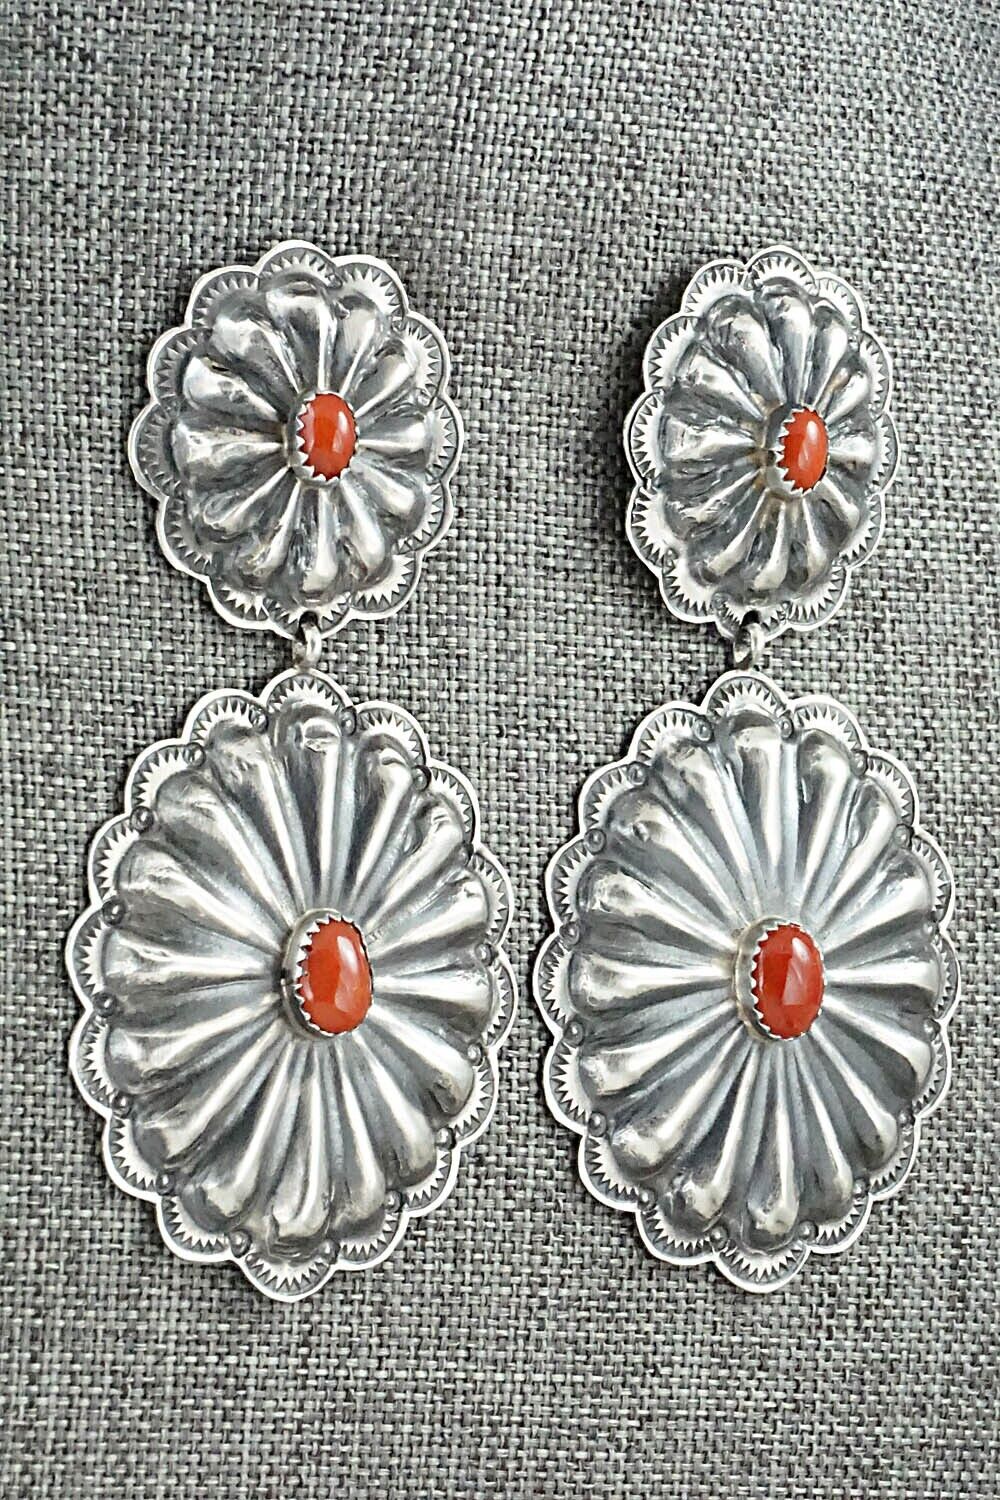 Coral & Sterling Silver Earrings - Rita Lee